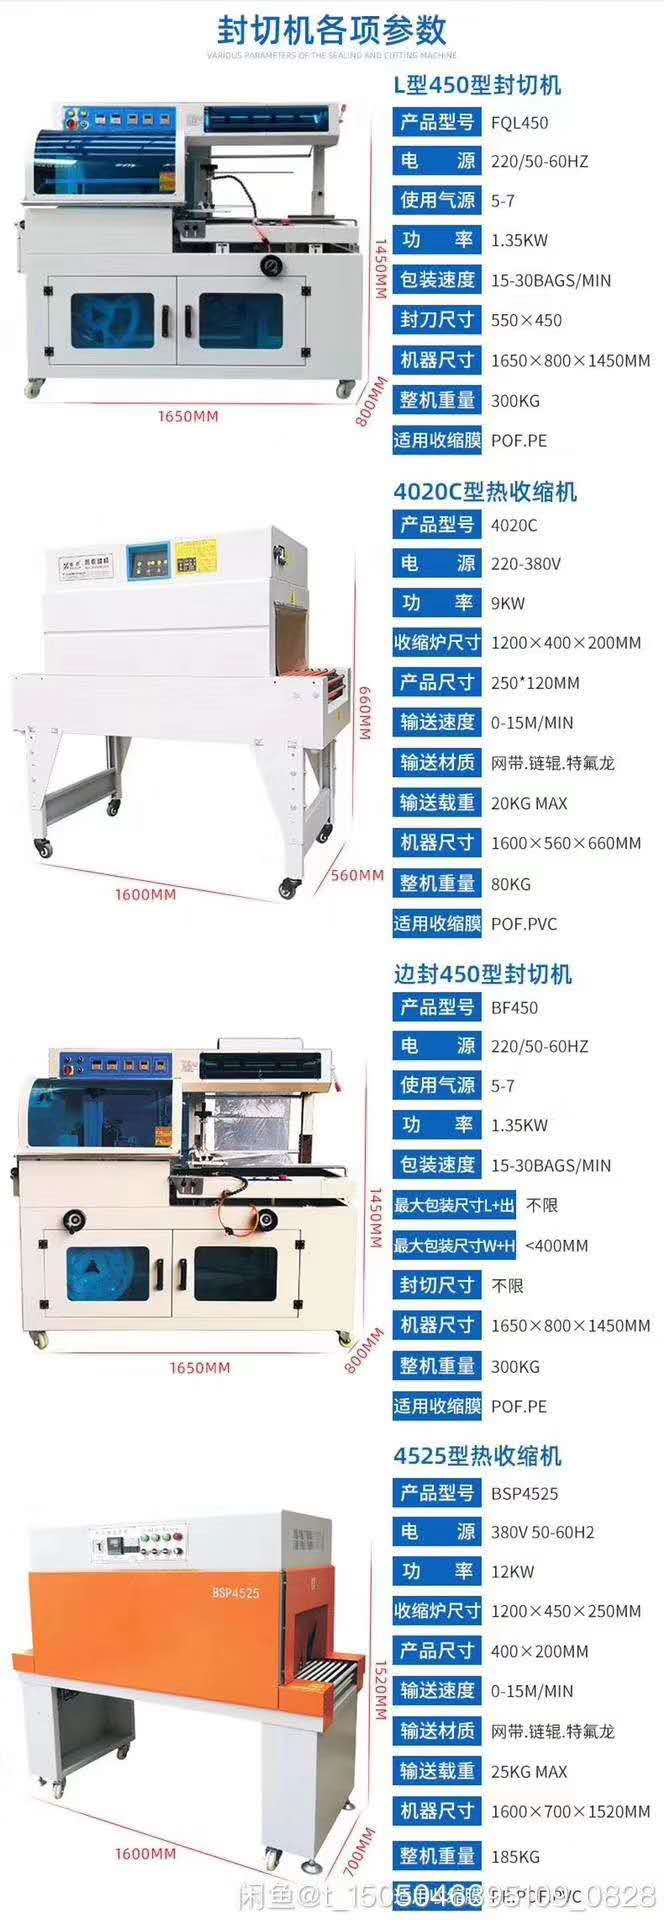 重庆全自动薄膜边封机BF-550厂家价格-重庆征程机械设备有限公司